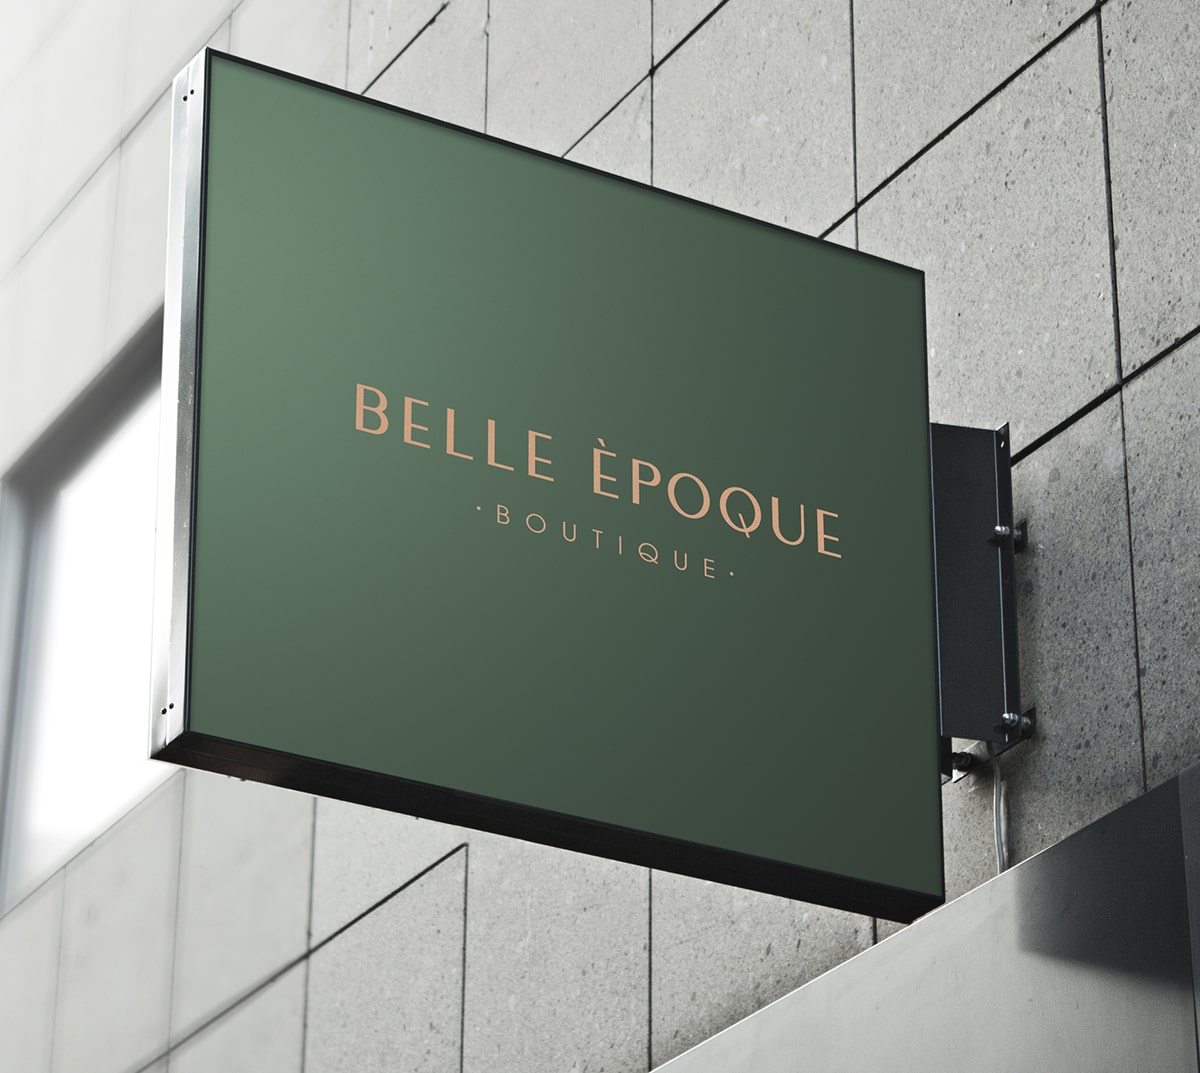 Diseño y desarrollo de identidad visual corporativa para Belle Èpoque. Banderola exterior.